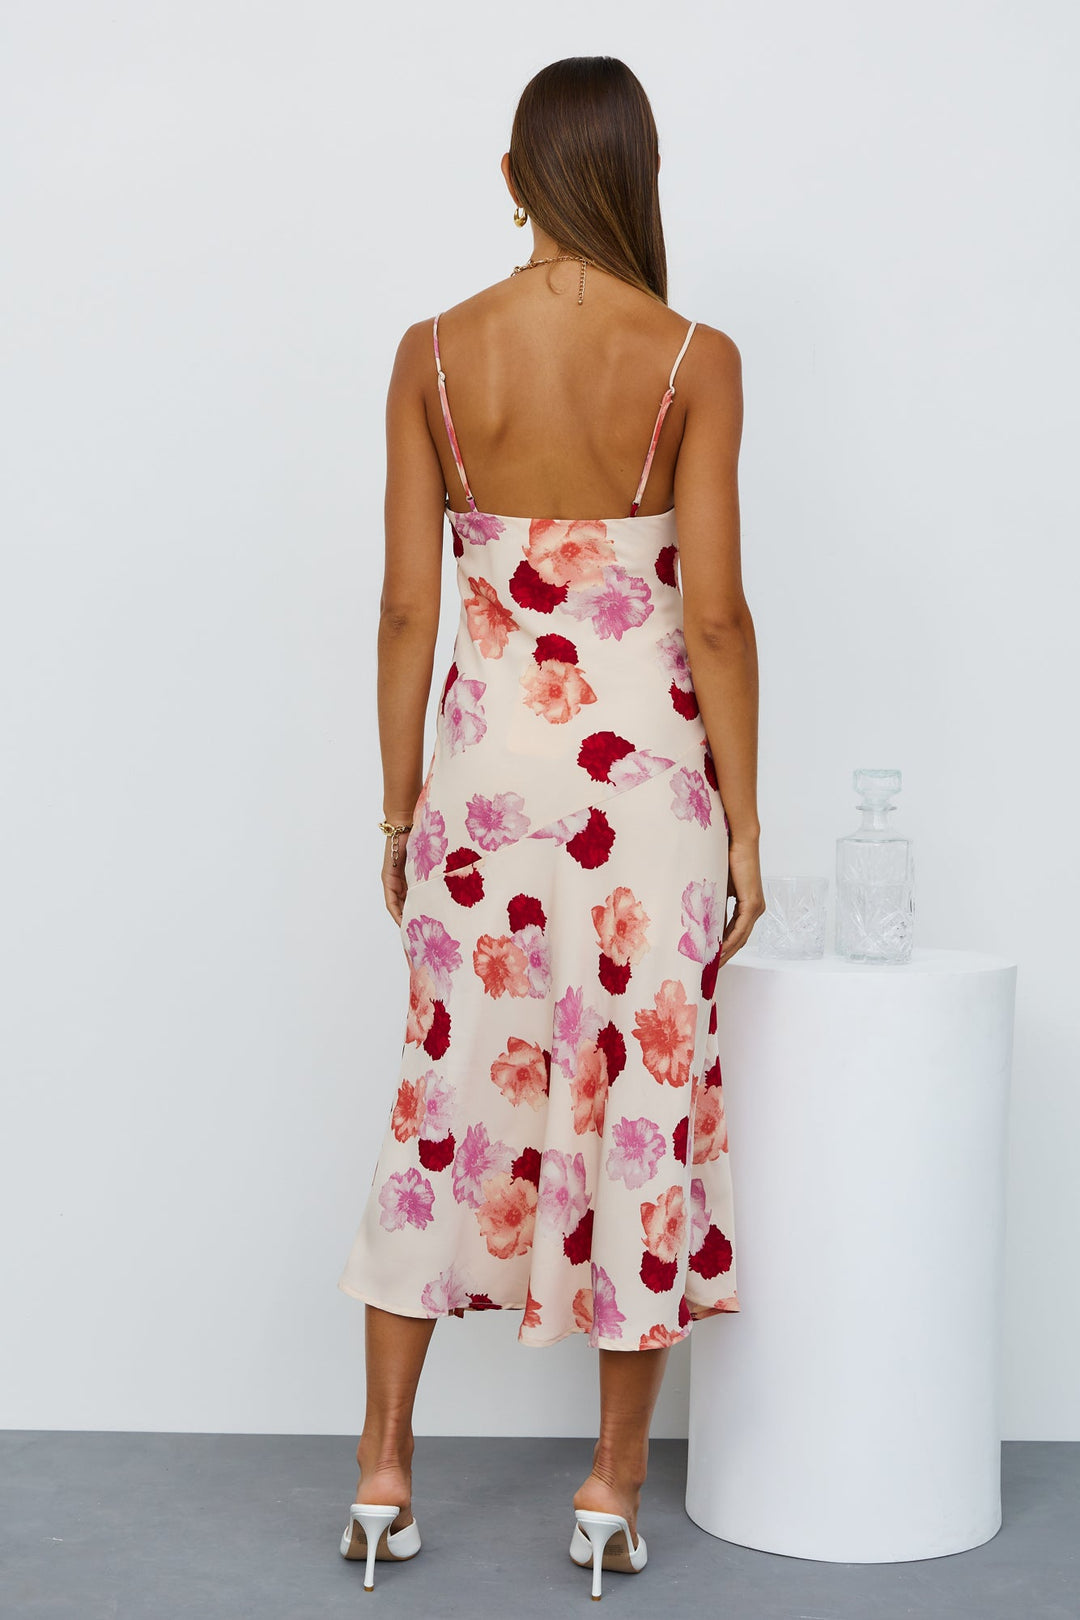 Women Summer French Print V Neck Split Suspender Dress